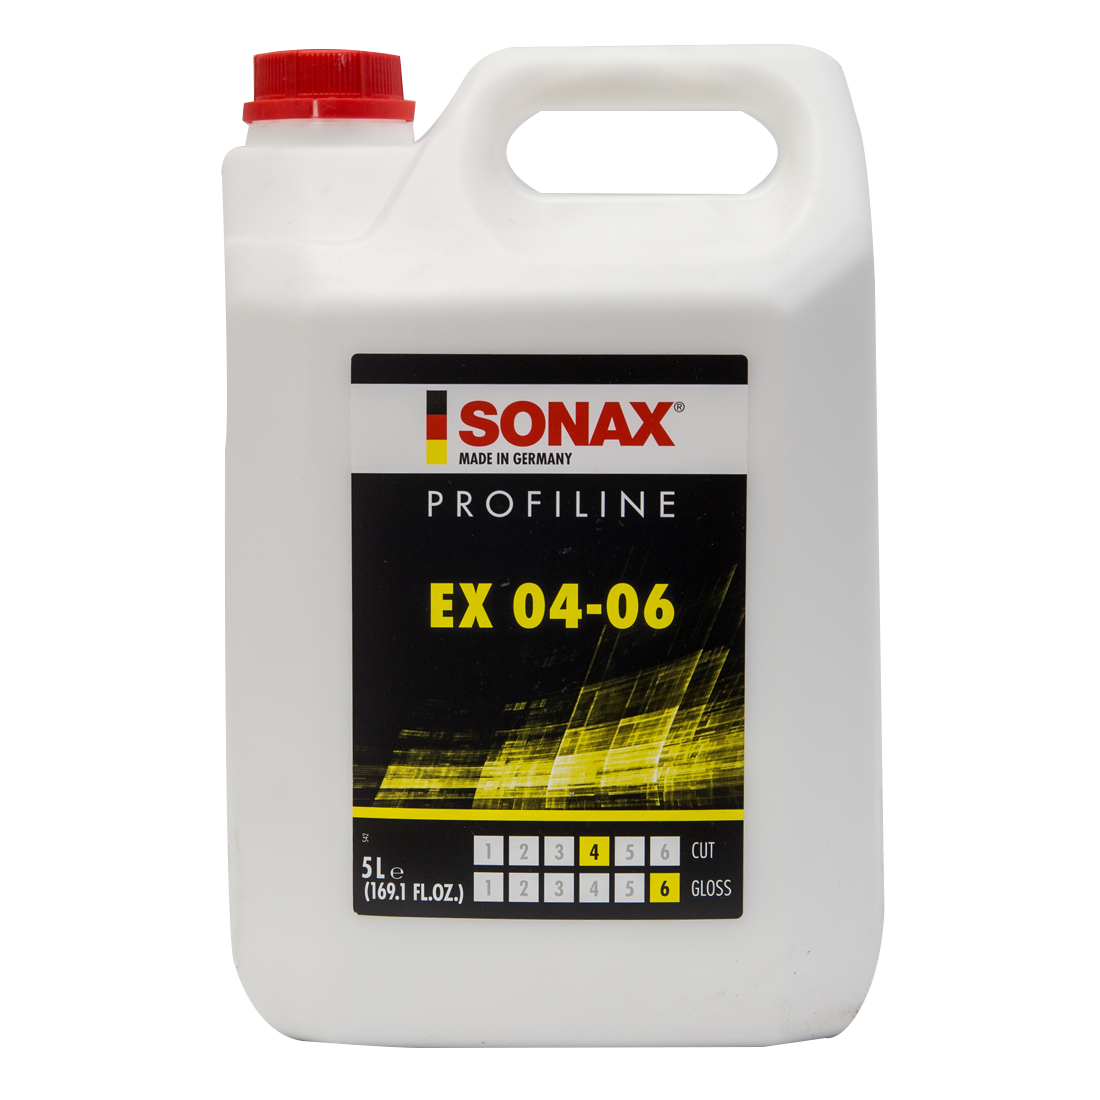 SONAX Profiline EX 04-06 5L - Orbital